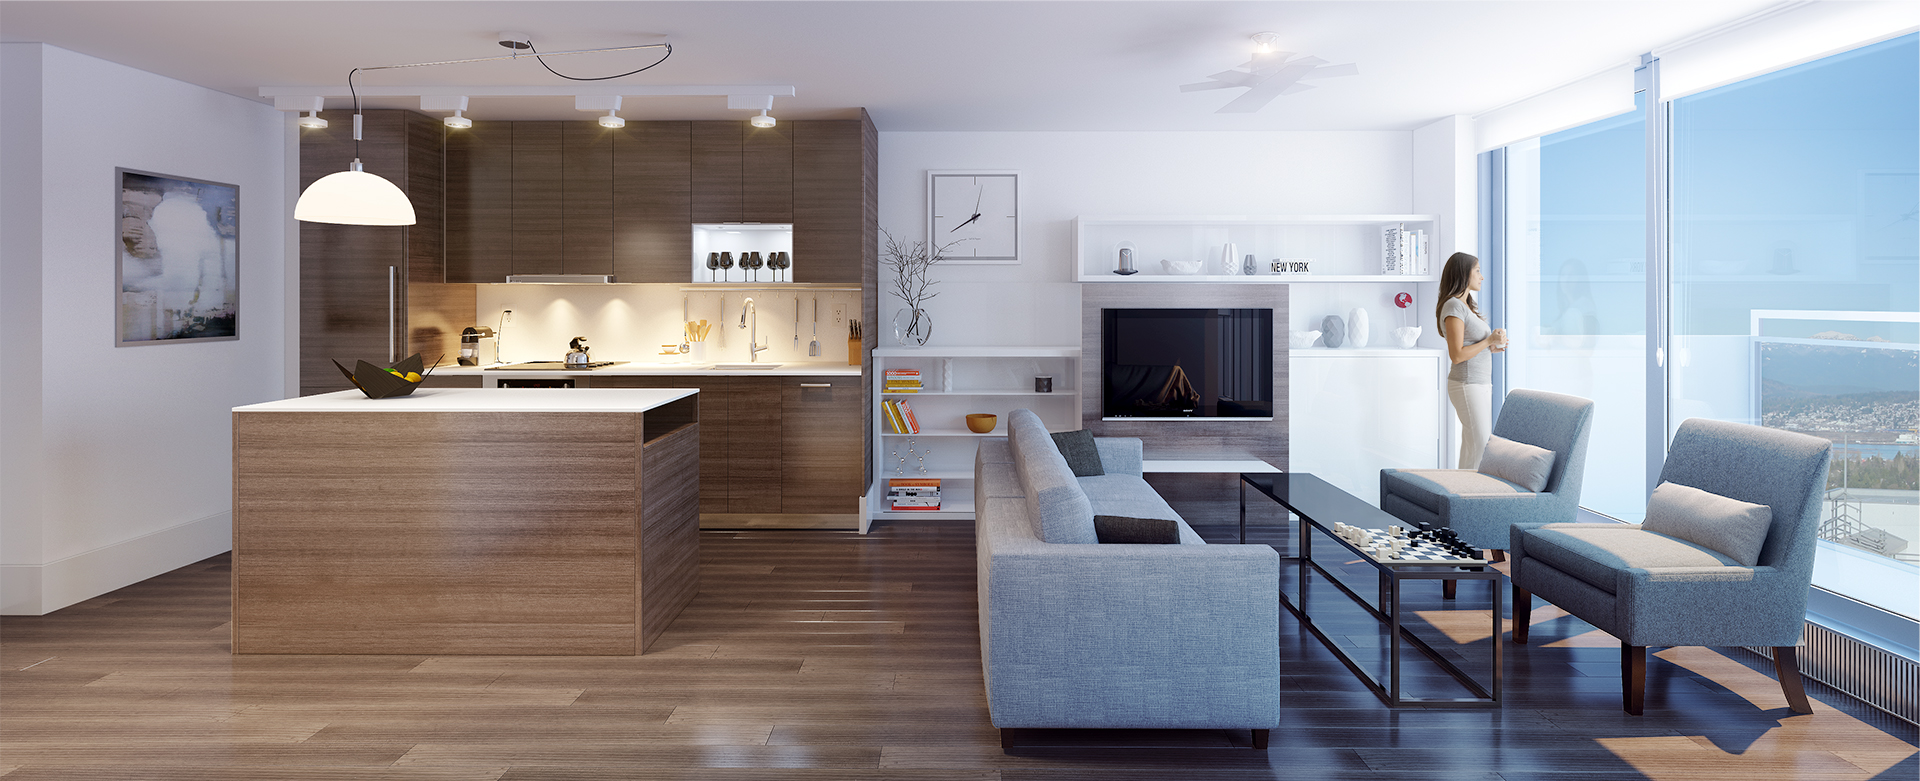 Kitchen lounge Interior Design Ideas